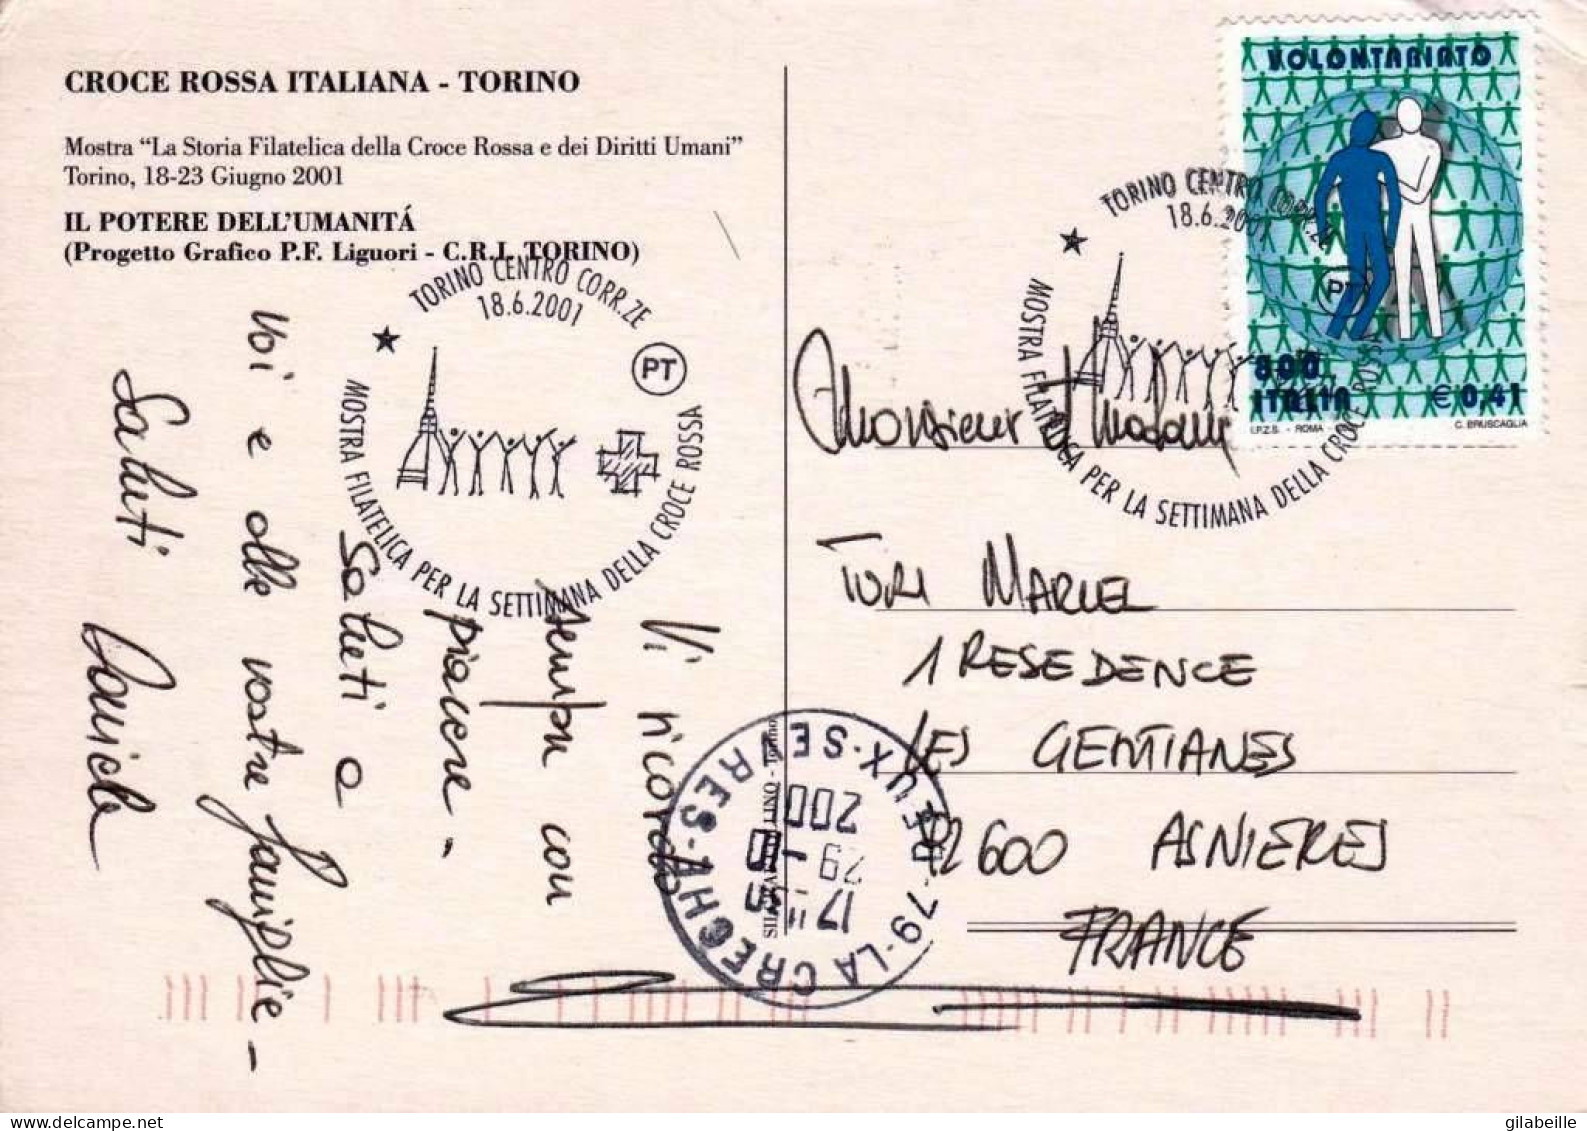 TORINO  - Settimana Della Croce Rossa 2001 - Comitato Provinciale Di Torino - Gezondheid & Ziekenhuizen